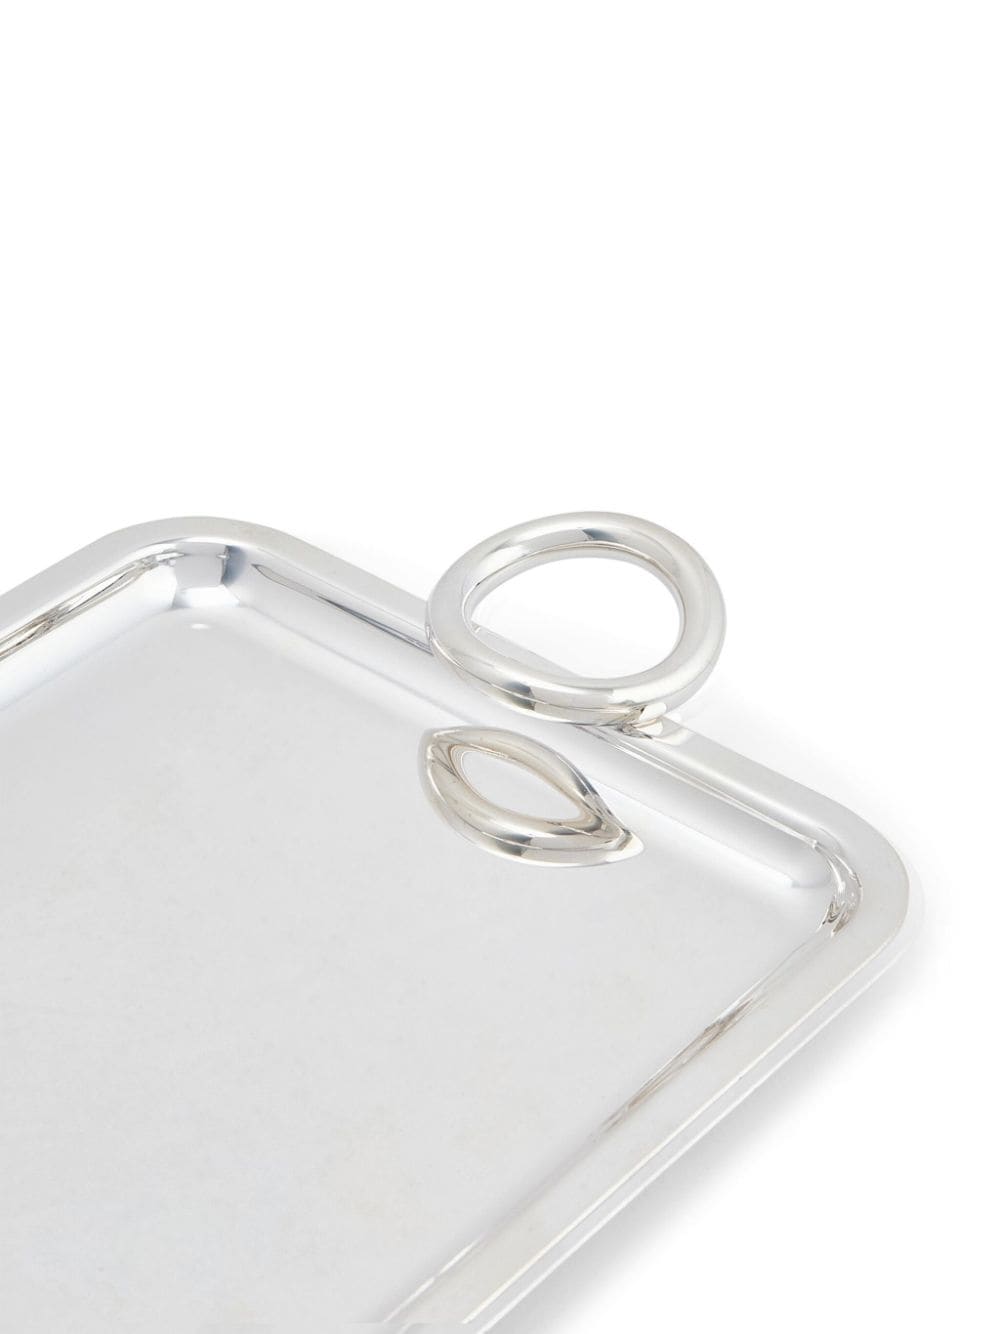 Shop Christofle Vertigo Silver-plated Tray